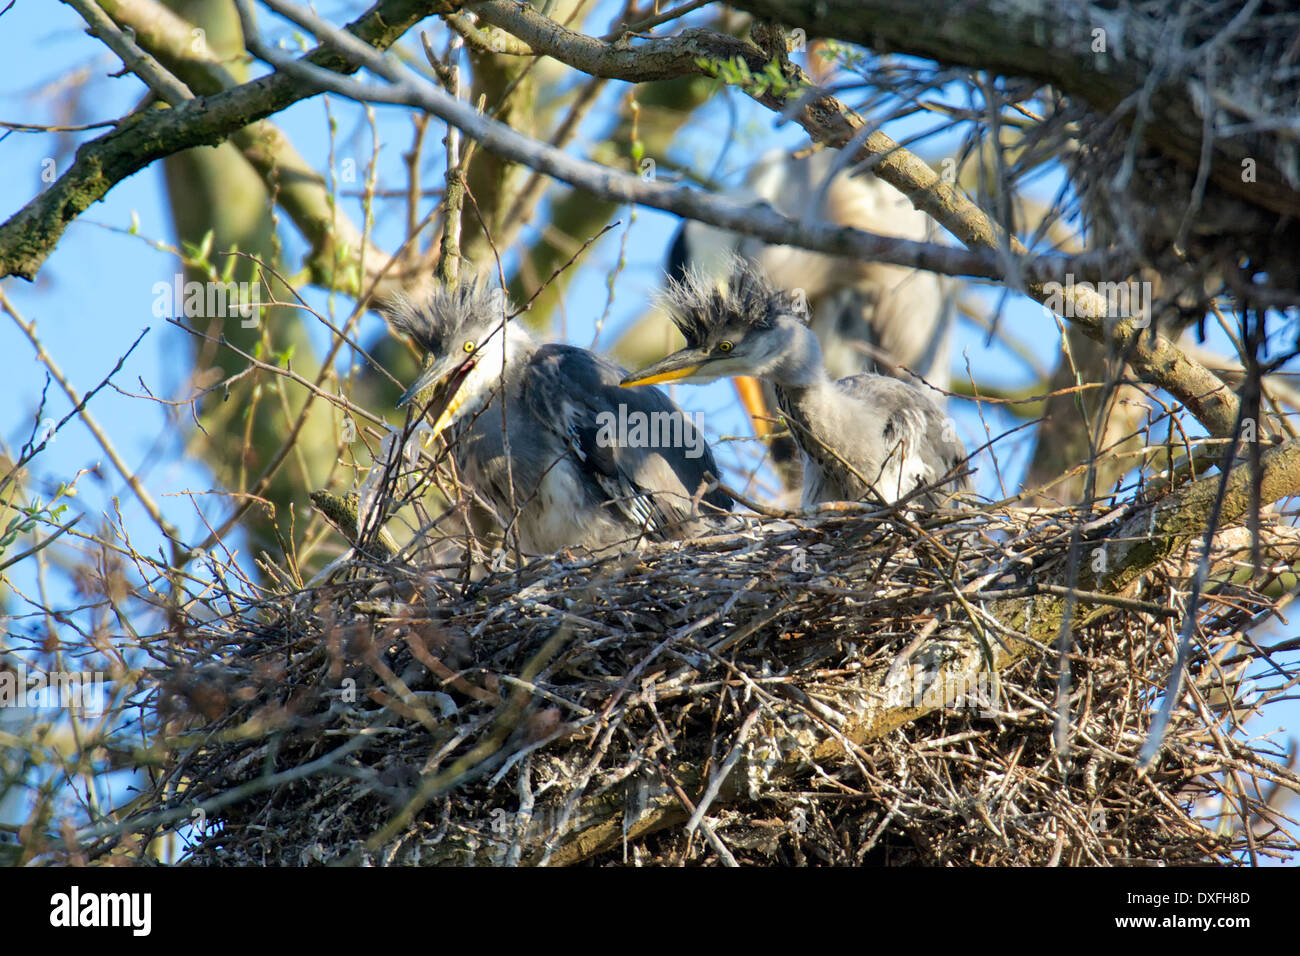 Junge Graureiher im Nest. Grey Heron chicks in their nest. Stock Photo